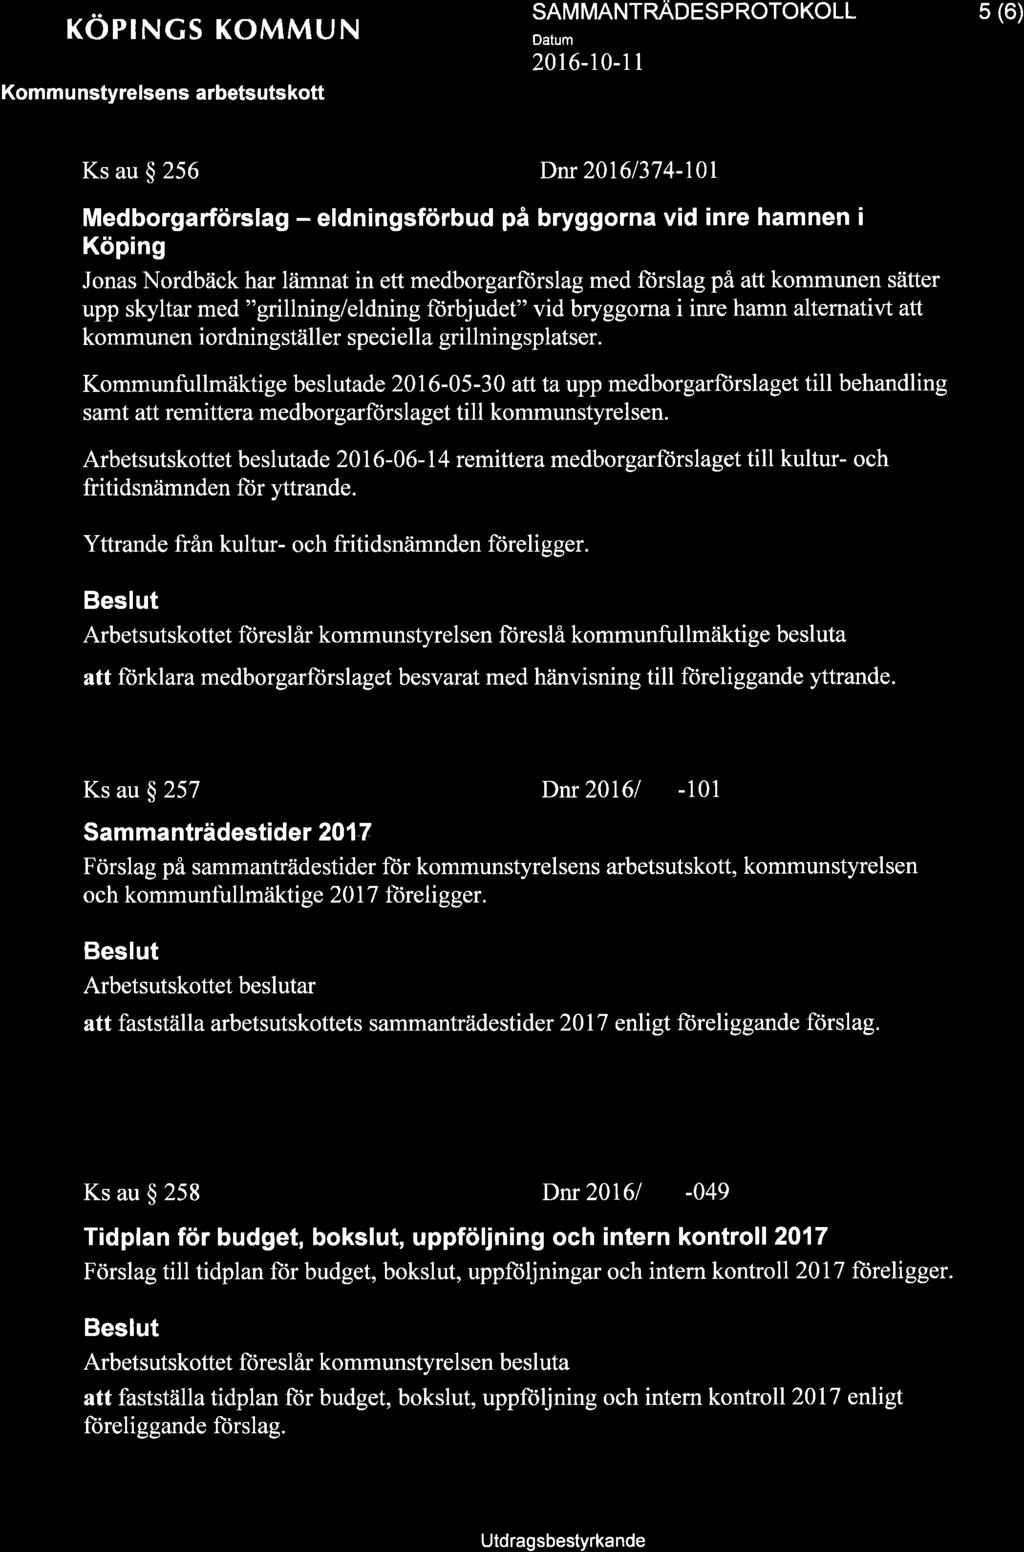 + KOPINGS KOMMUN Kommu nstyrelsens arbetsutskott SAM MANTNNOCS P ROTOKOLL 2016-10-1 1 5 (6) Ks au $ 256 Dnr 20161374-10l Medborgarförslag - eldningsförbud på bryggorna vid inre hamnen i Köping Jonas